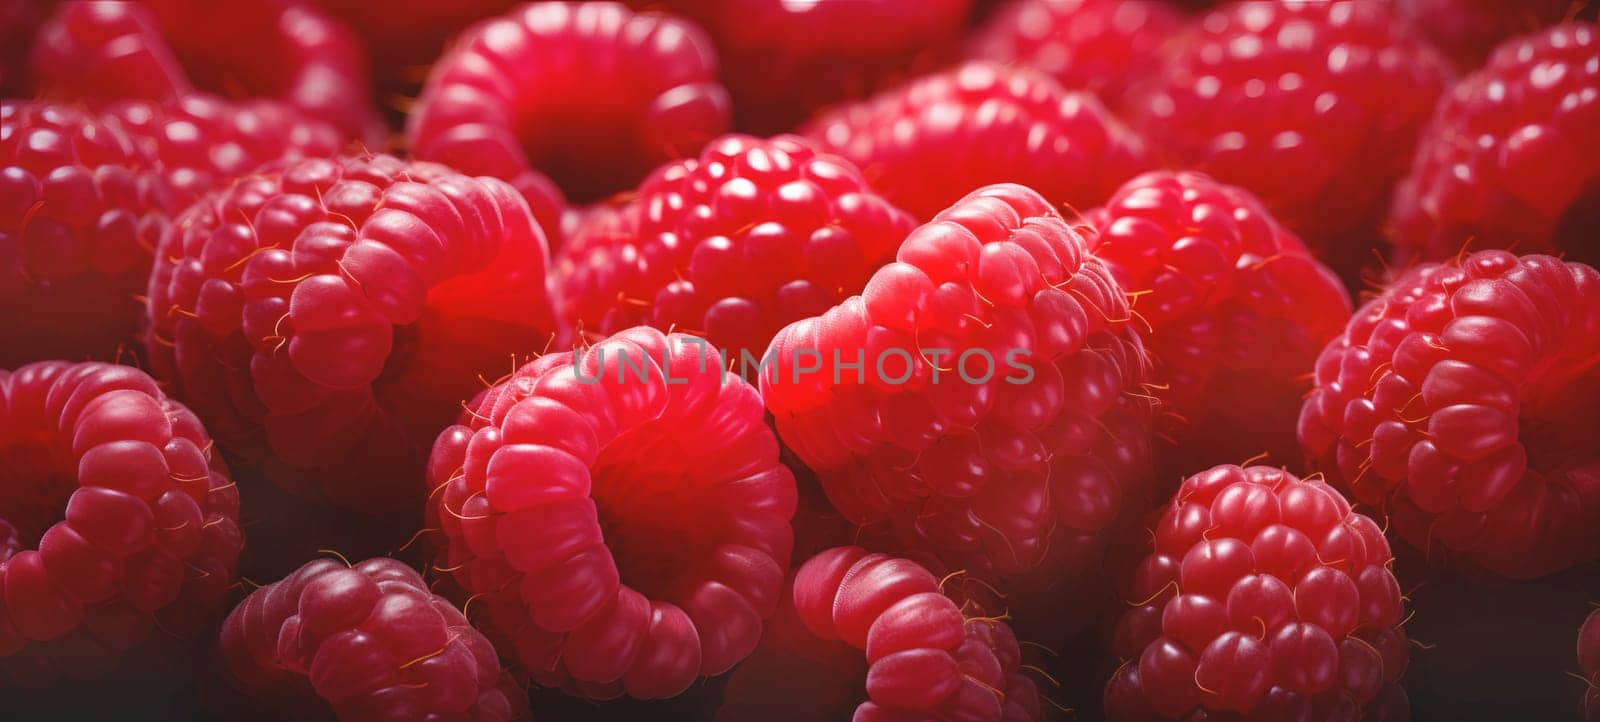 fruit banner from the harvest of ripe organic raspberries by NataliPopova